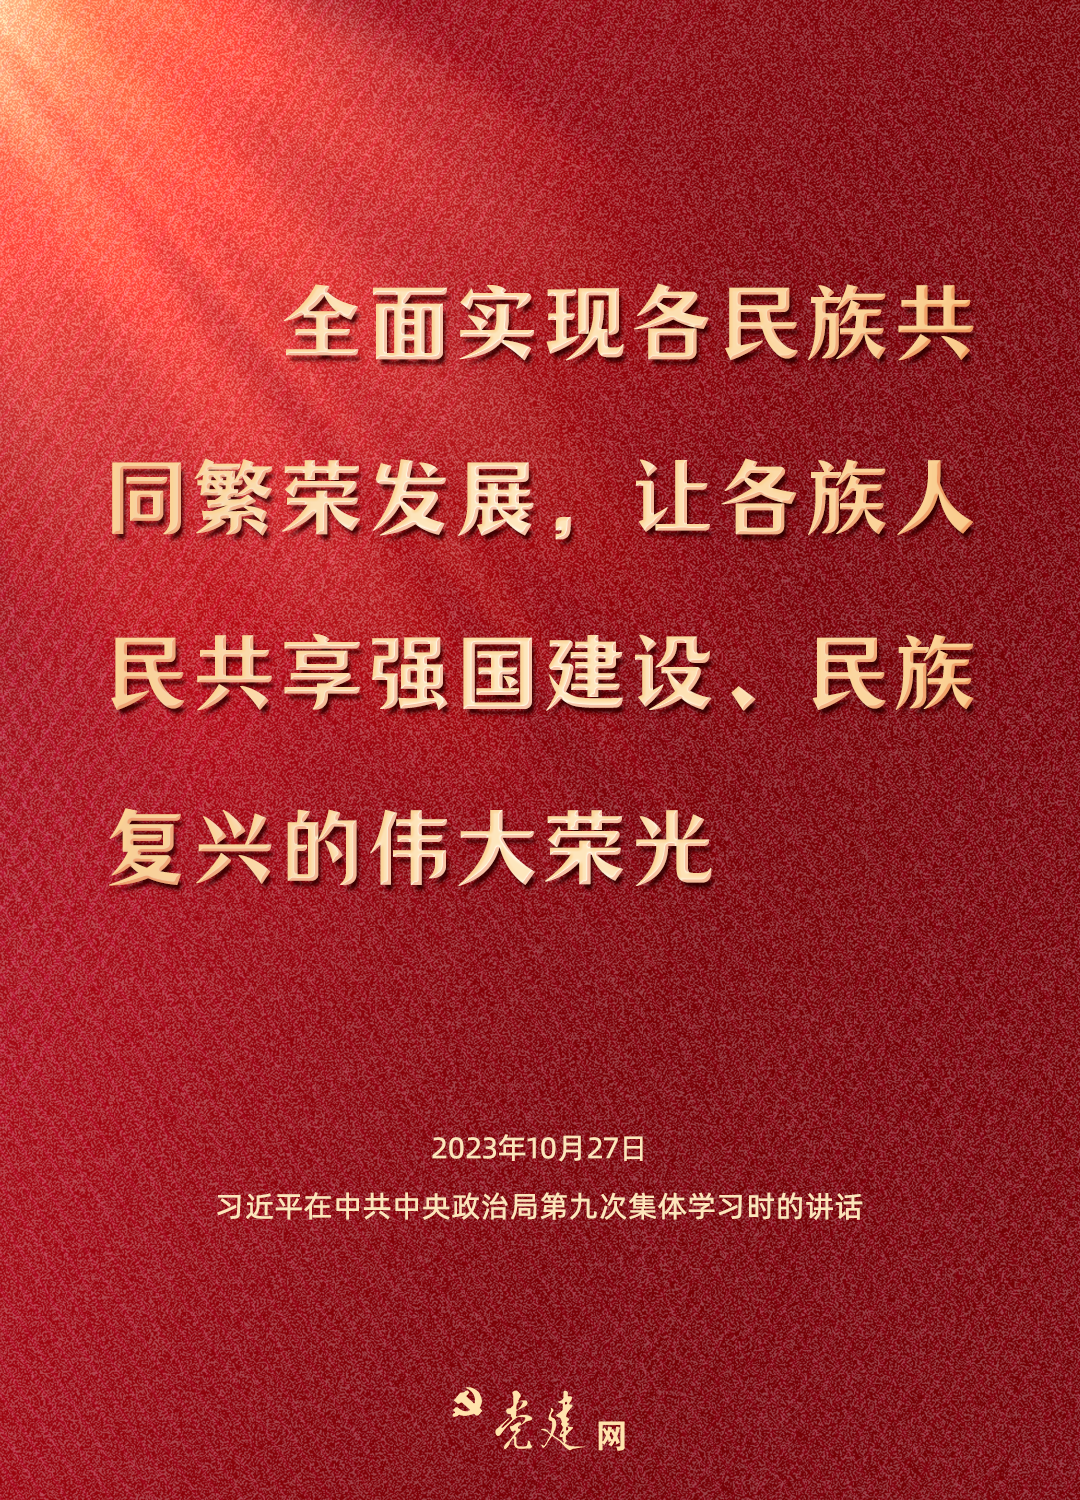 一图学习丨铸牢中华民族共同体意识，总书记这样强调5